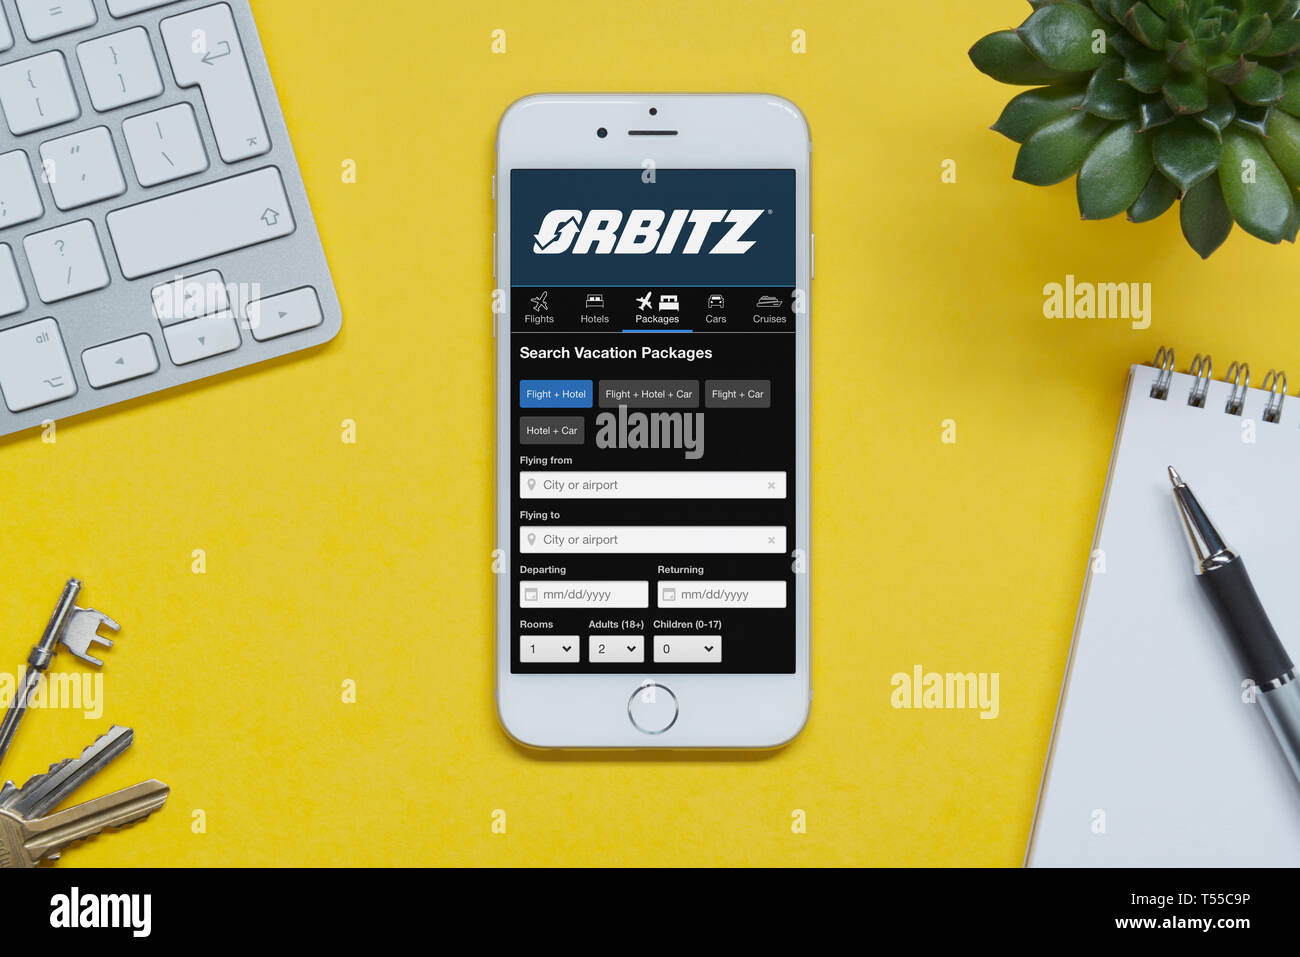 Ein iPhone zeigt die Orbitz website ruht auf einem gelben Hintergrund Tabelle mit einer Tastatur, Tasten, Notepad und Anlage (nur redaktionelle Nutzung). Stockfoto